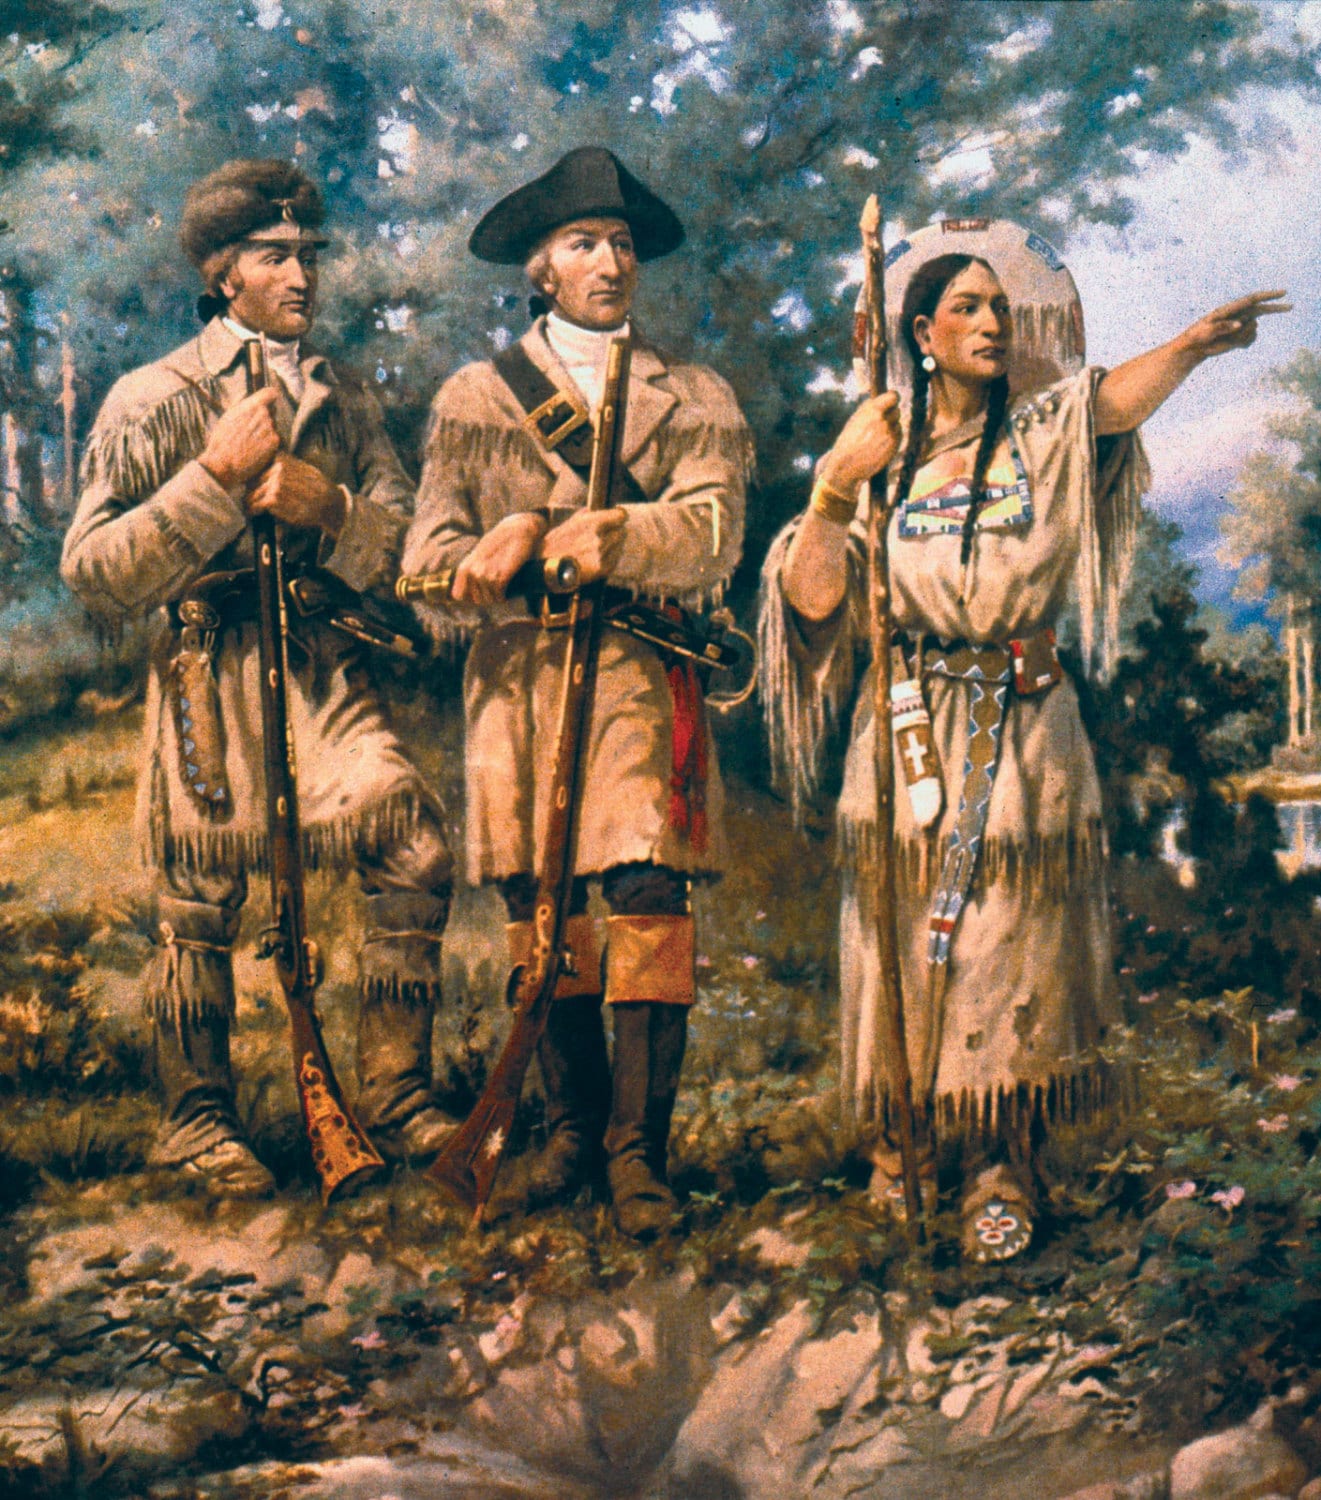 Children's William Clark Explorer Costume, Frontier Costume, Lewis & Clark Expedition